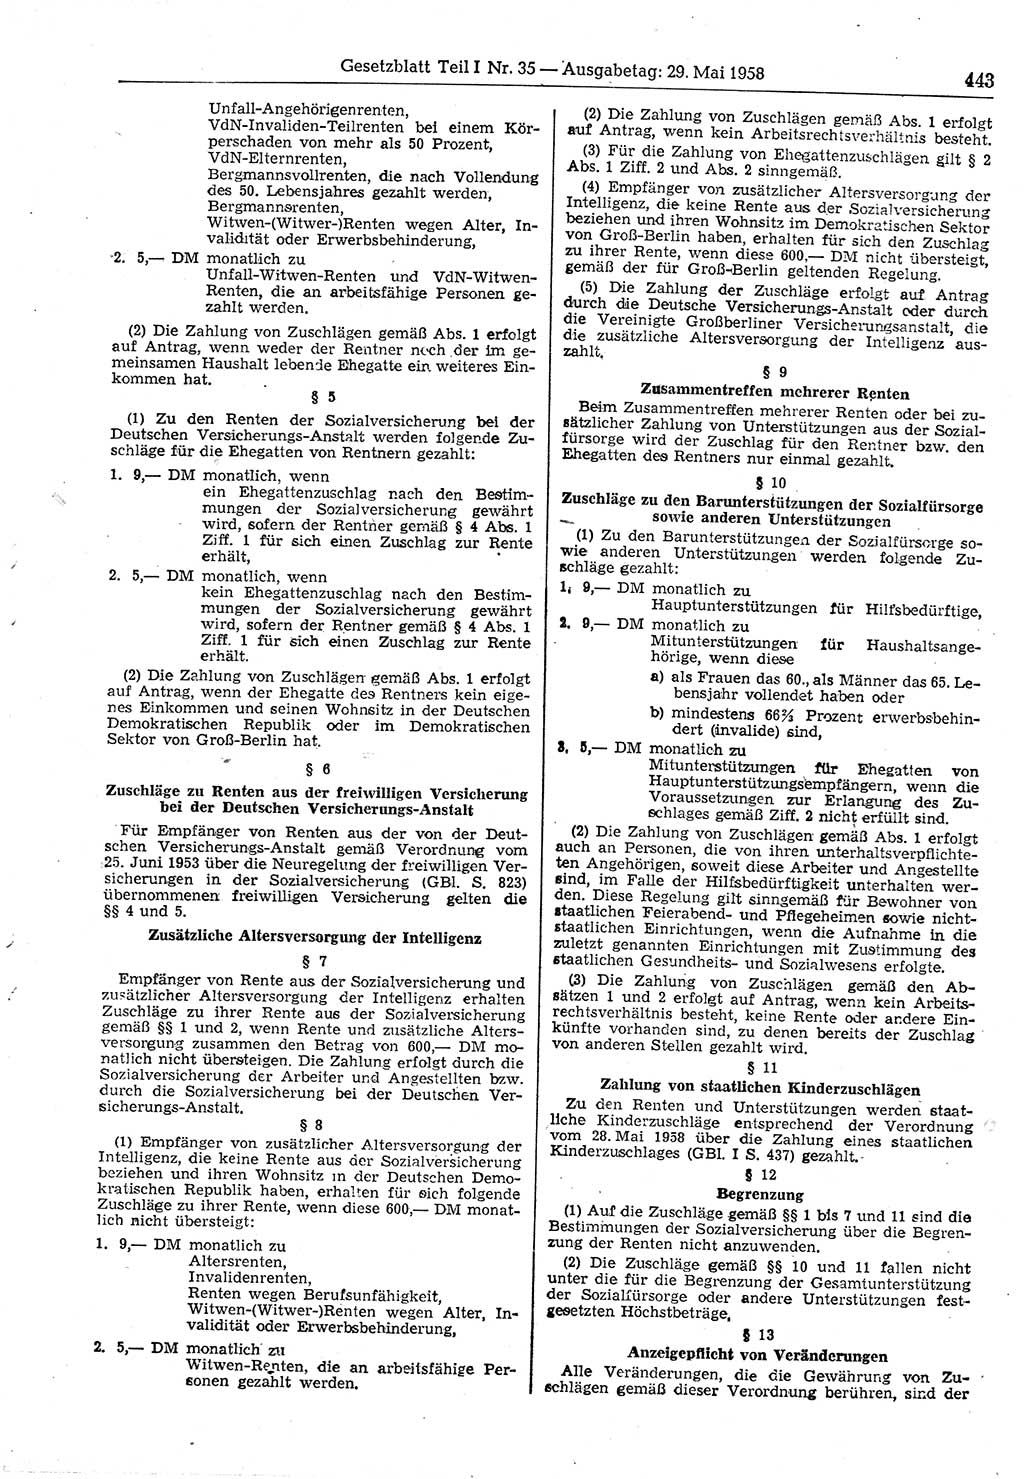 Gesetzblatt (GBl.) der Deutschen Demokratischen Republik (DDR) Teil Ⅰ 1958, Seite 443 (GBl. DDR Ⅰ 1958, S. 443)